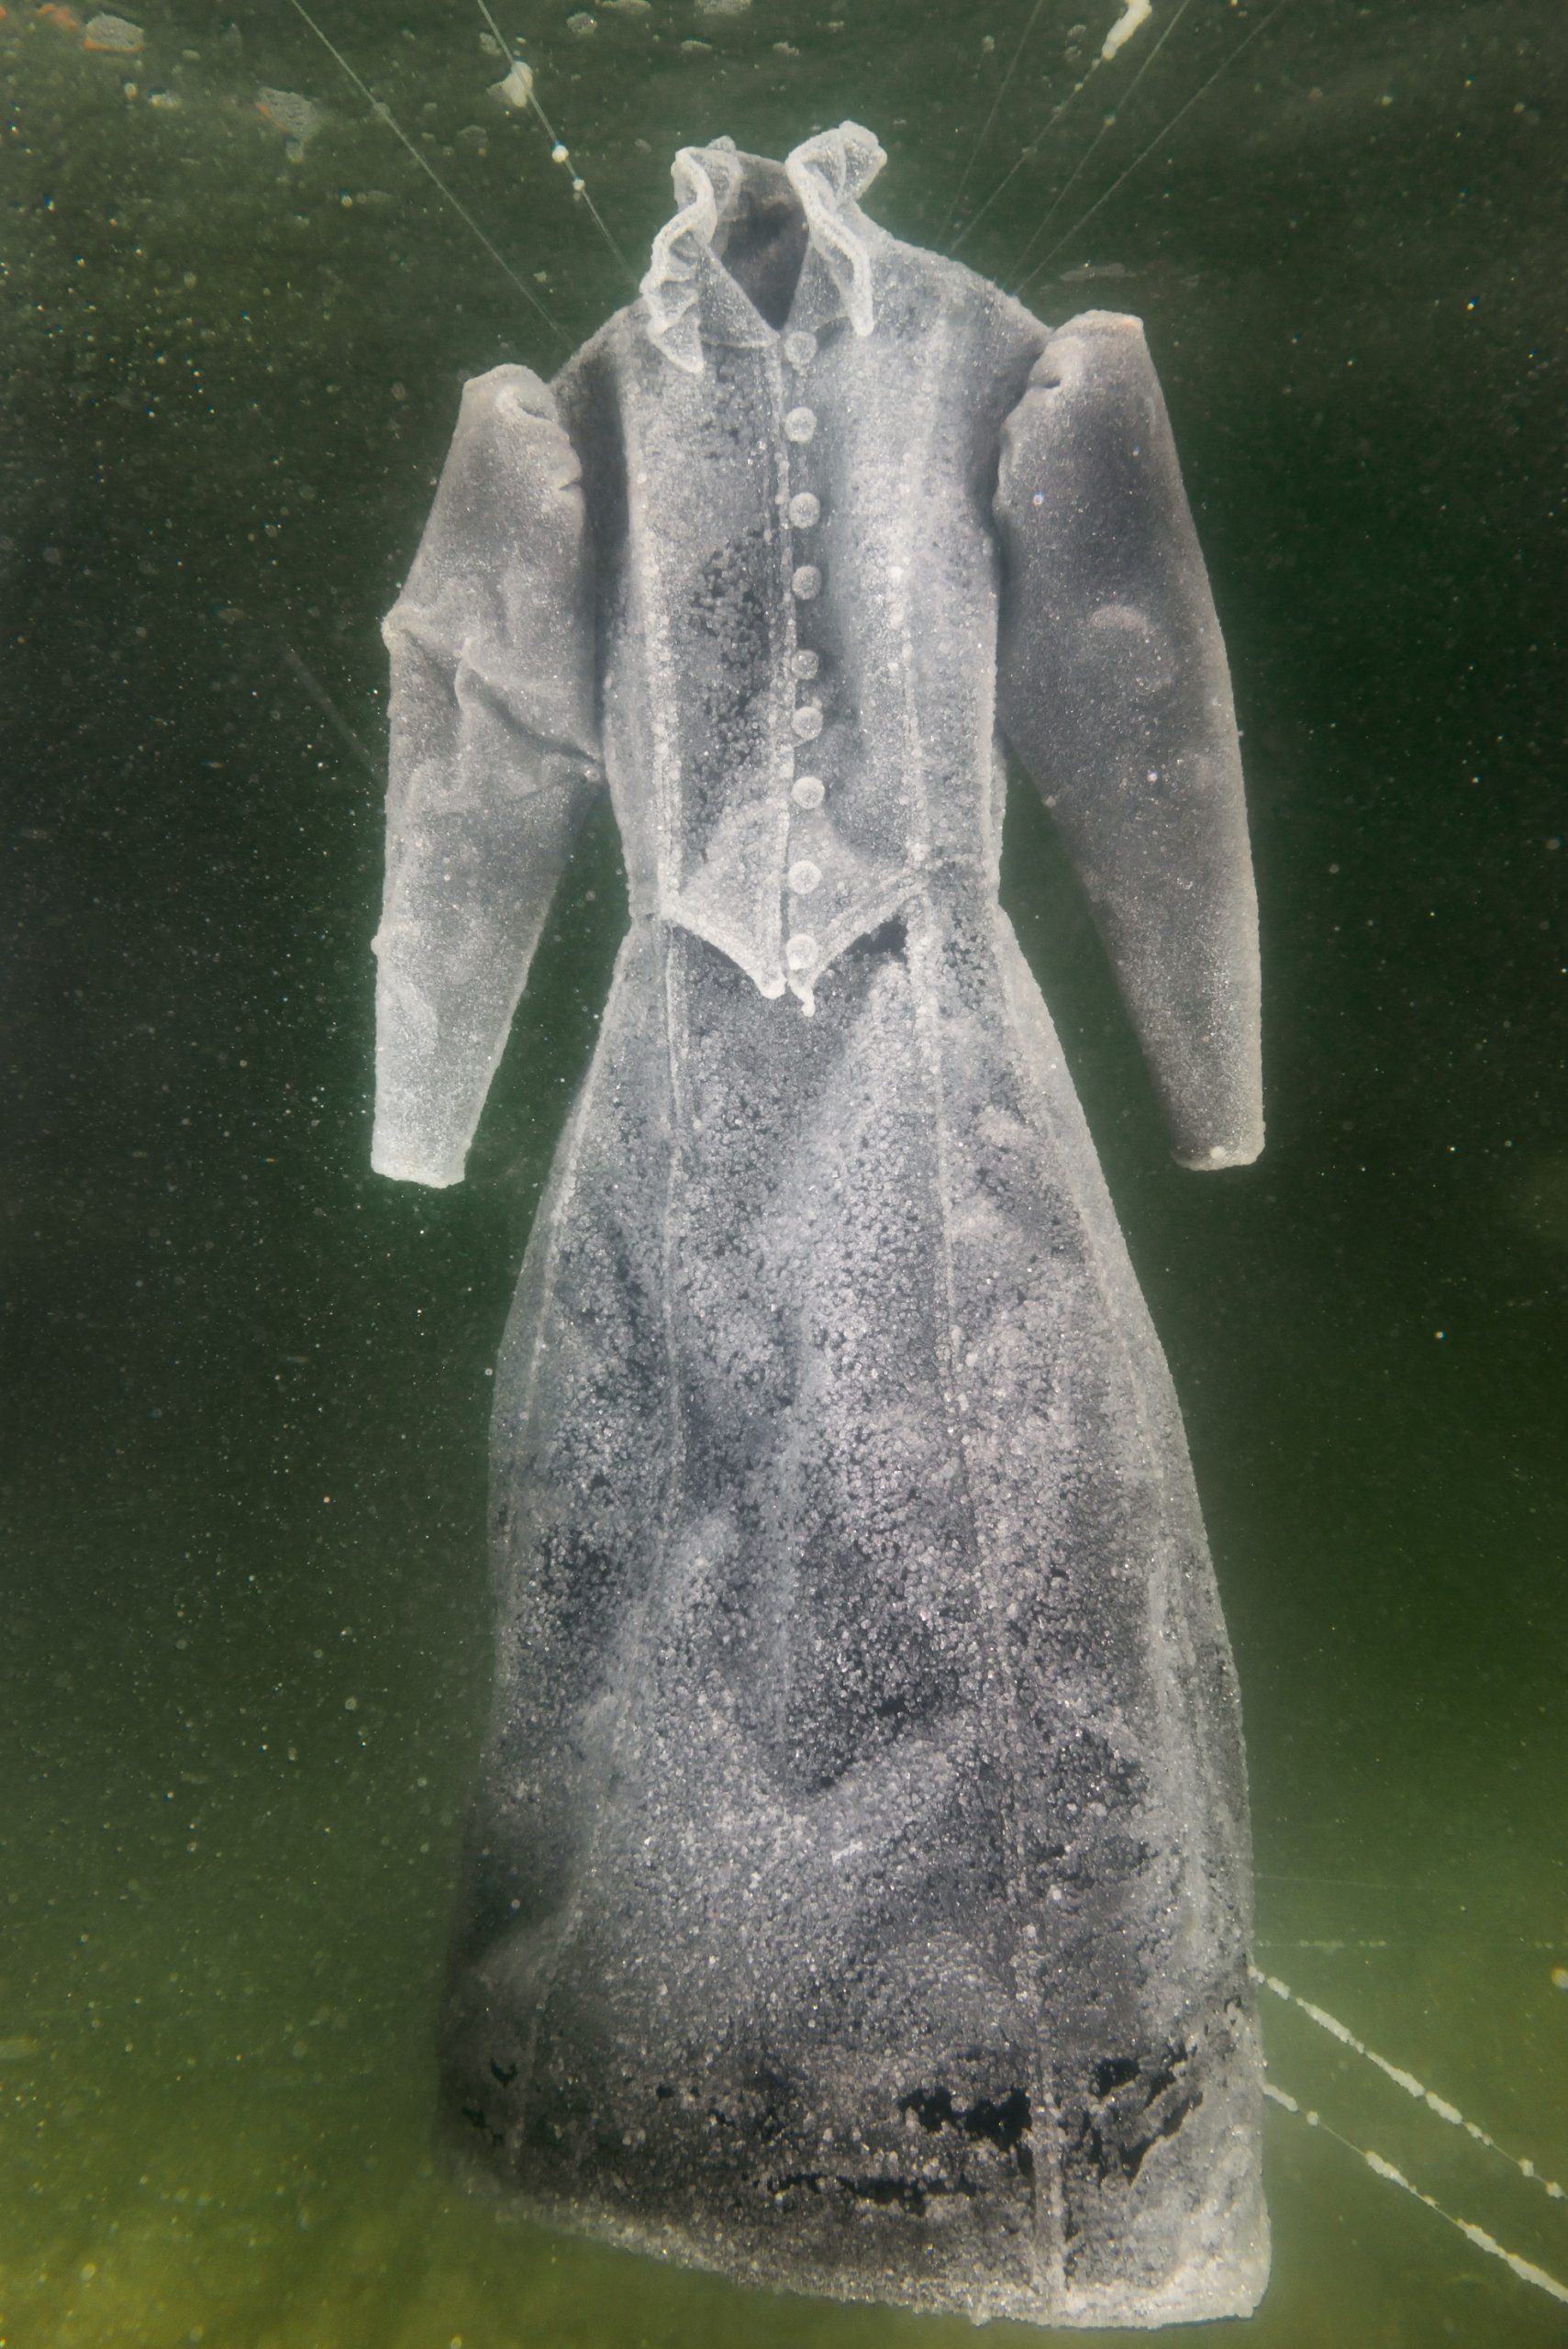 Sigalit Landau, Salt-crystal gown V, 2014, color prints, 163x109cm, 24,000$